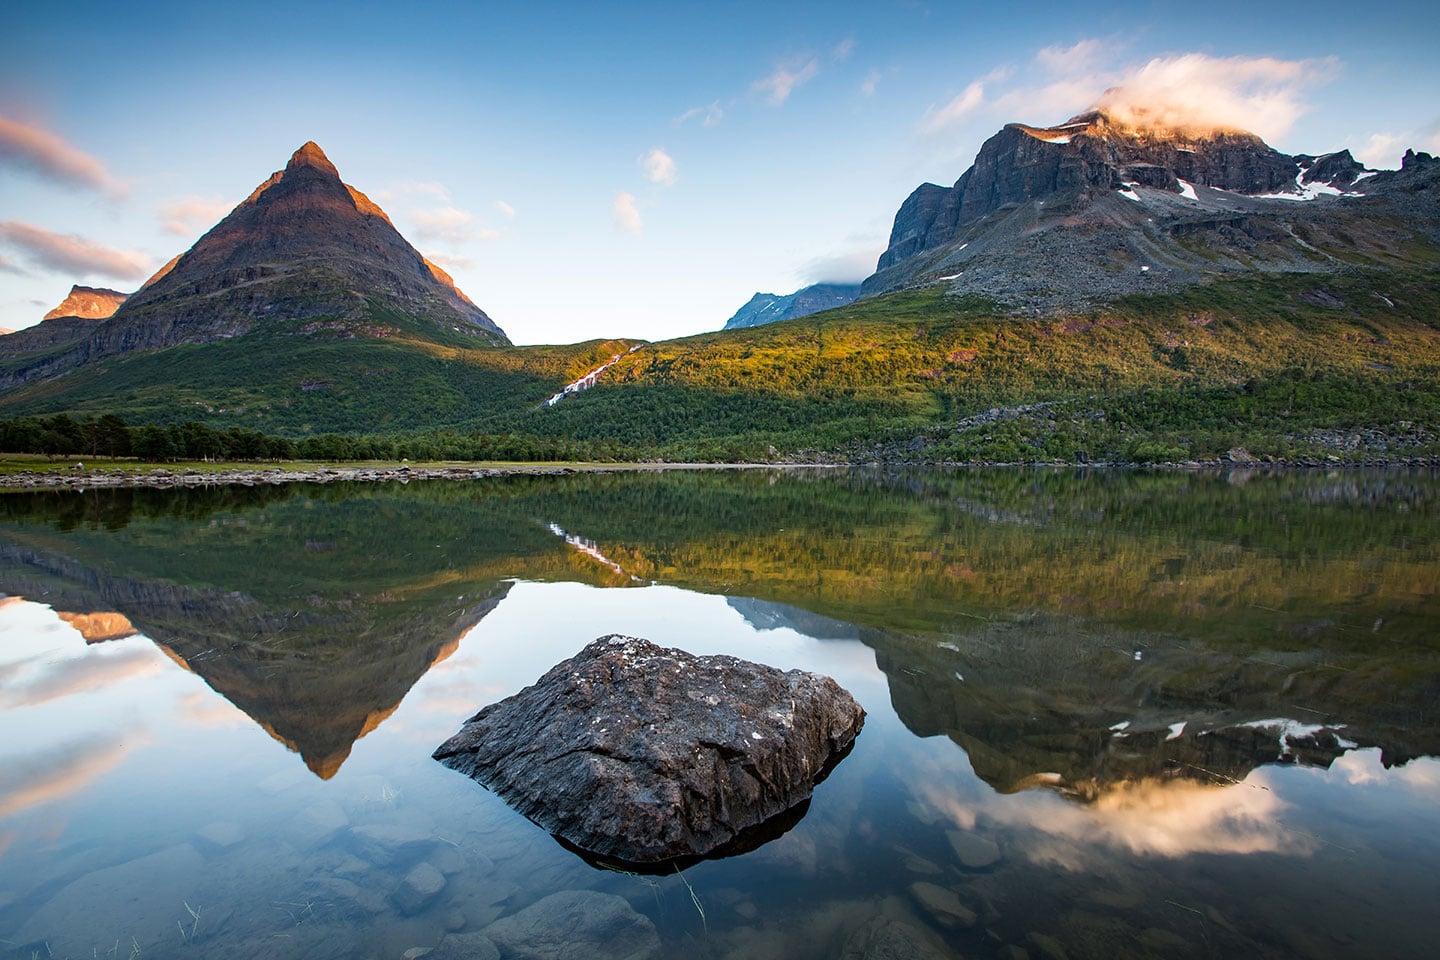 Innderdalen mountain peaks in Norway